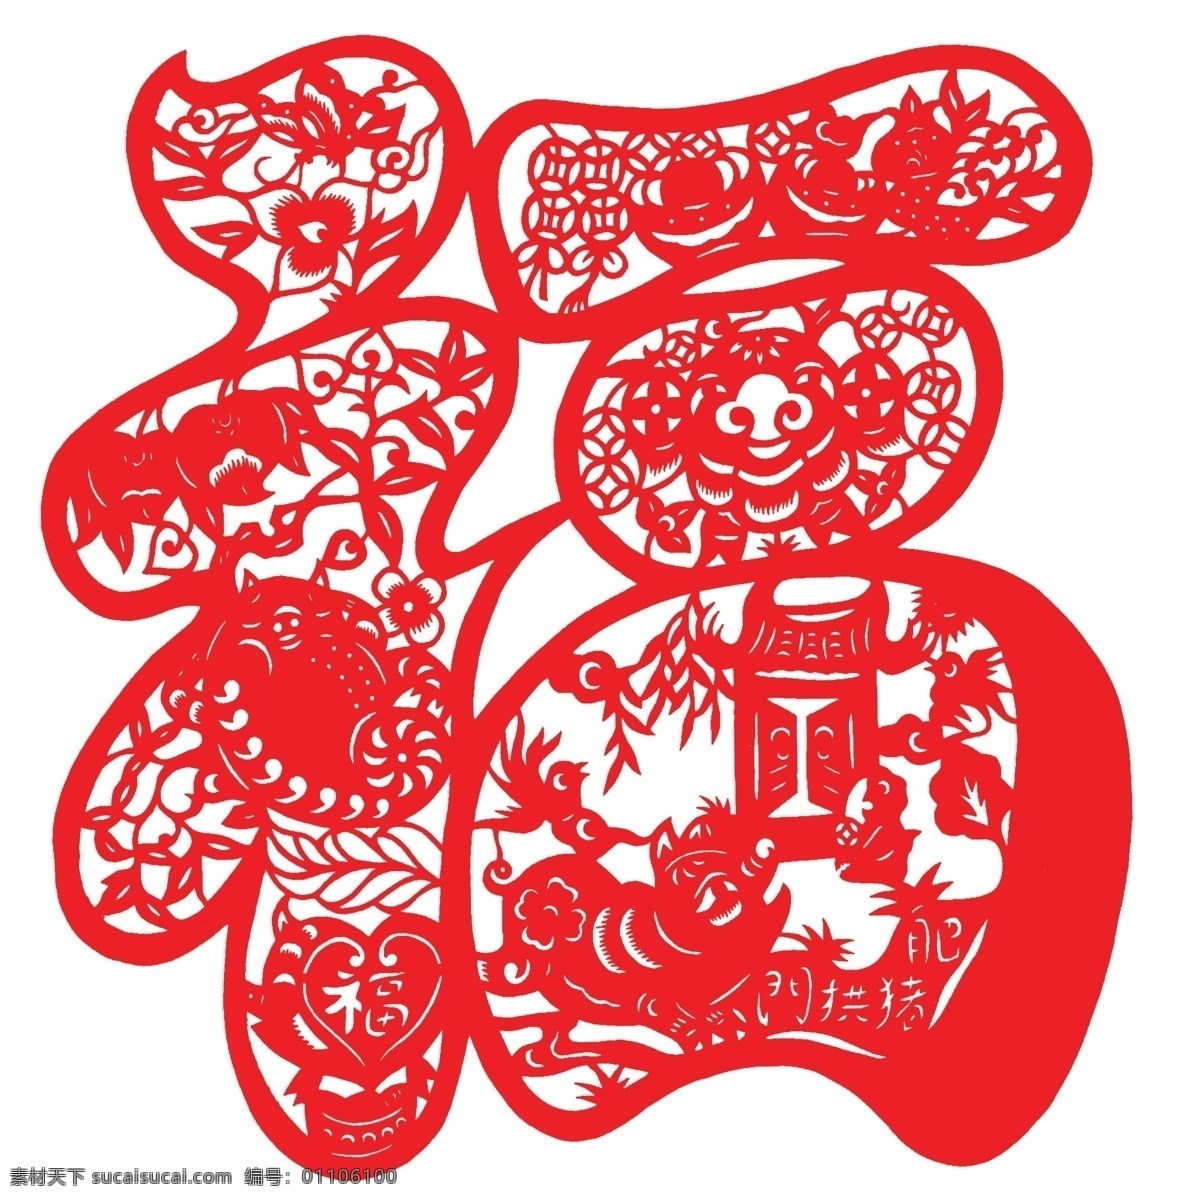 十二生肖 猪 福字 生肖 动物 剪纸 中国元素 传统文化 创意剪纸 矢量素材